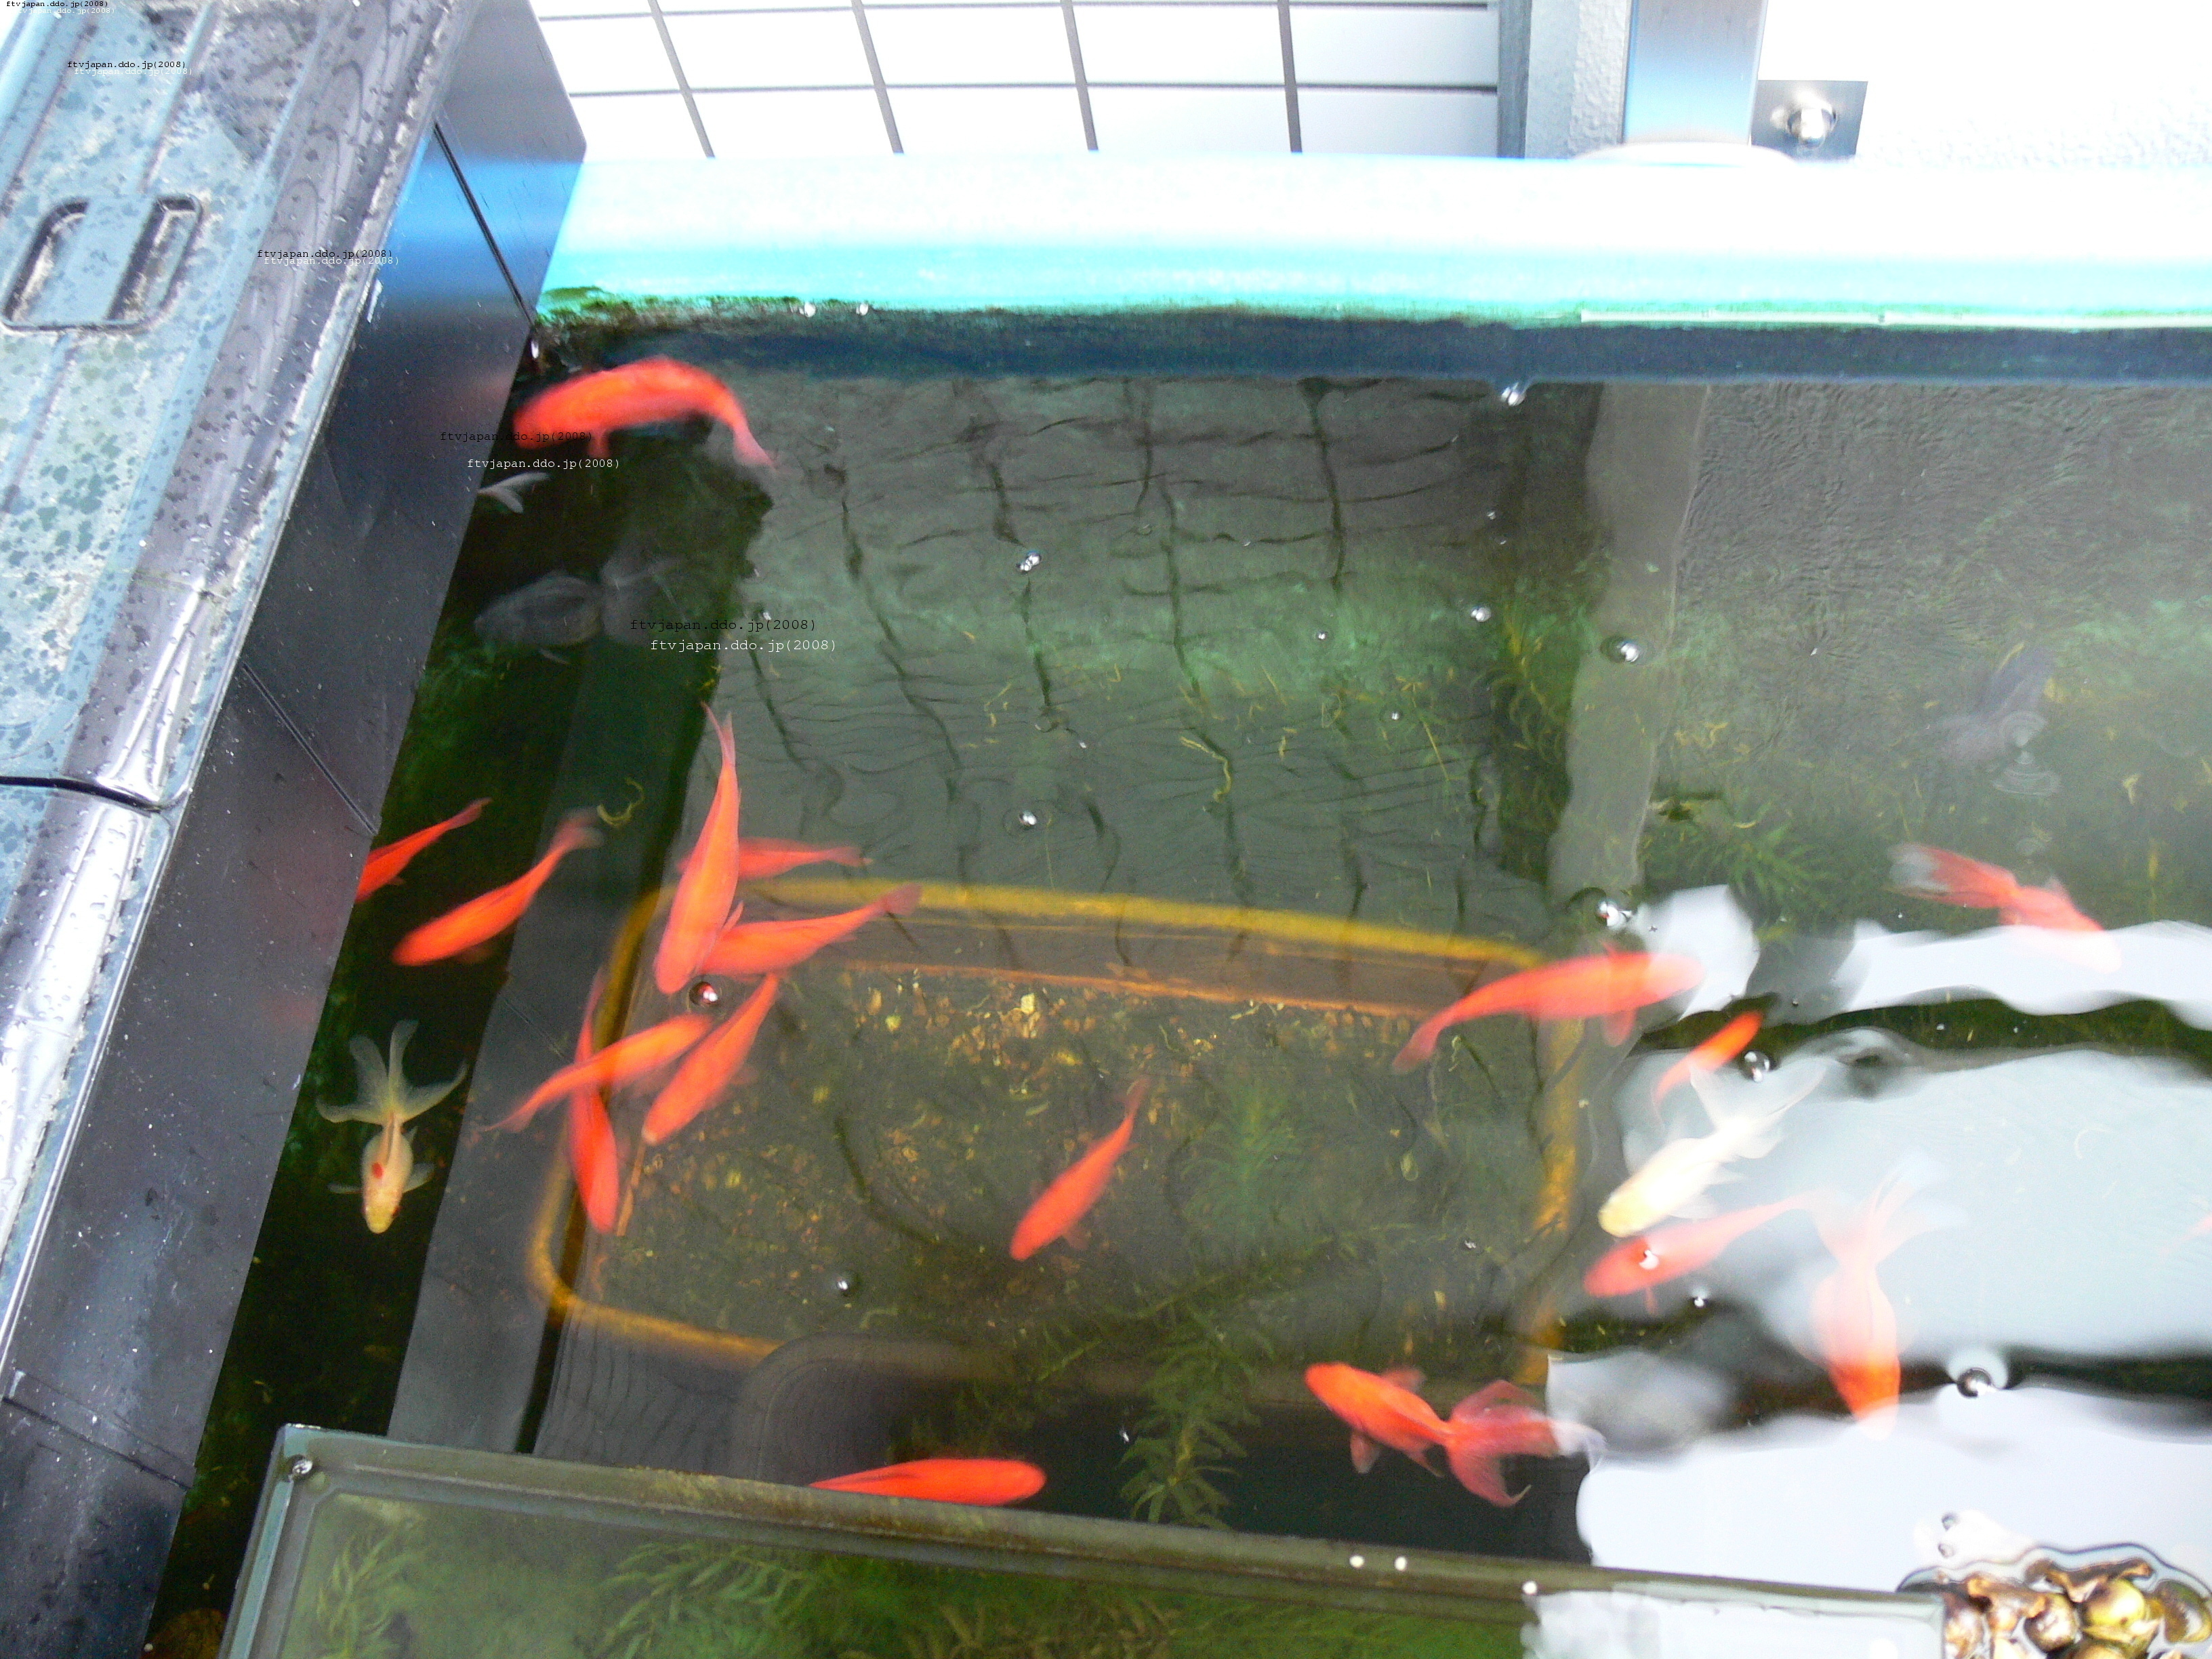 ふなブログ: 真冬の金魚池の様子